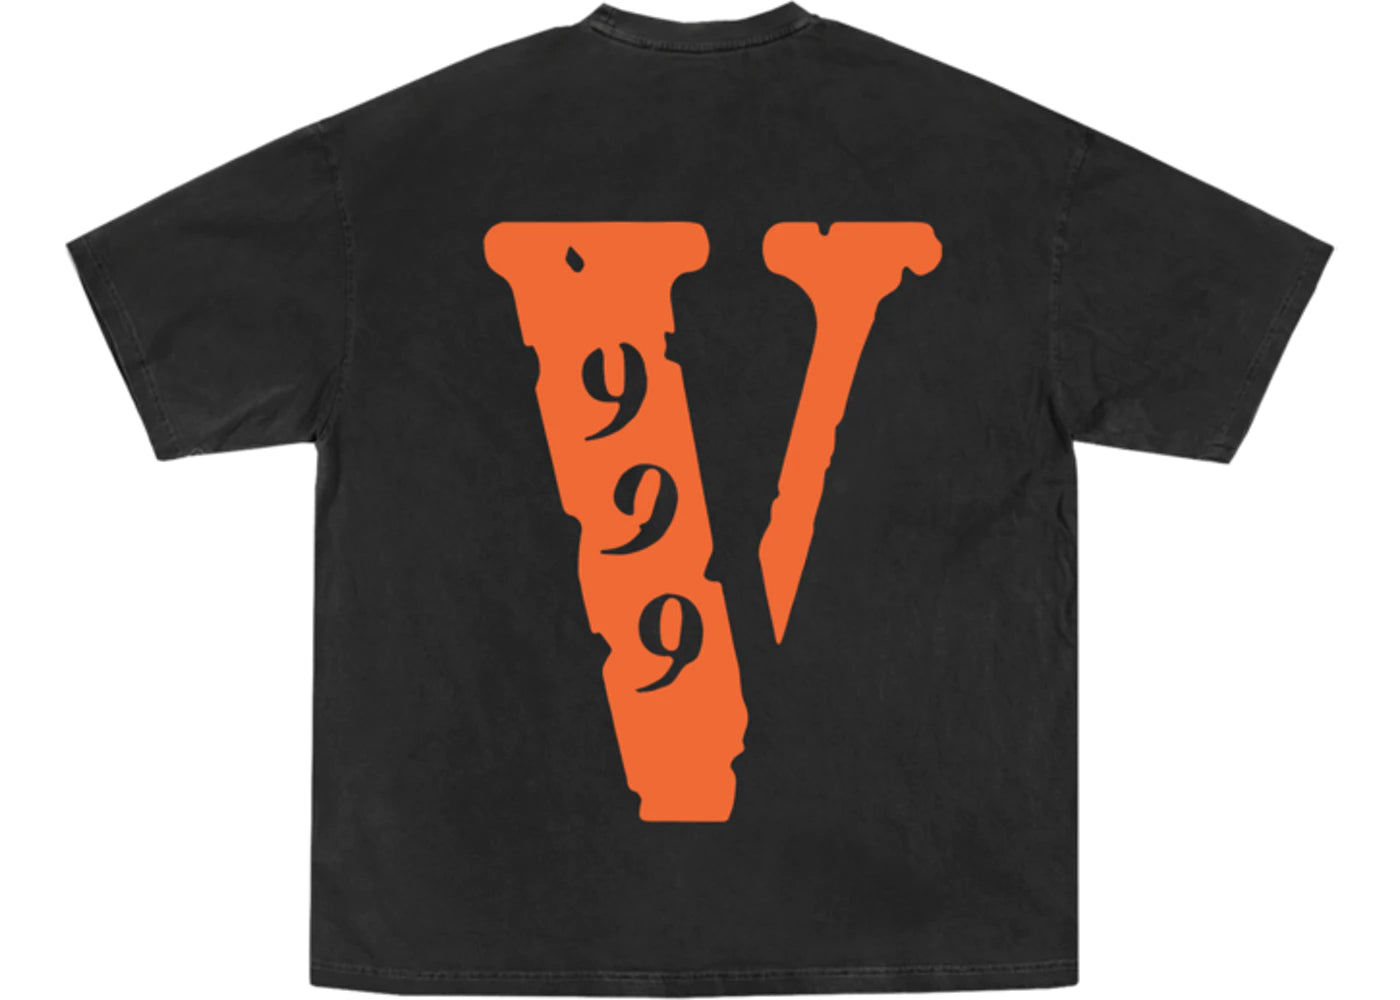 Juice Wrld x Vlone 999 T-shirt Black